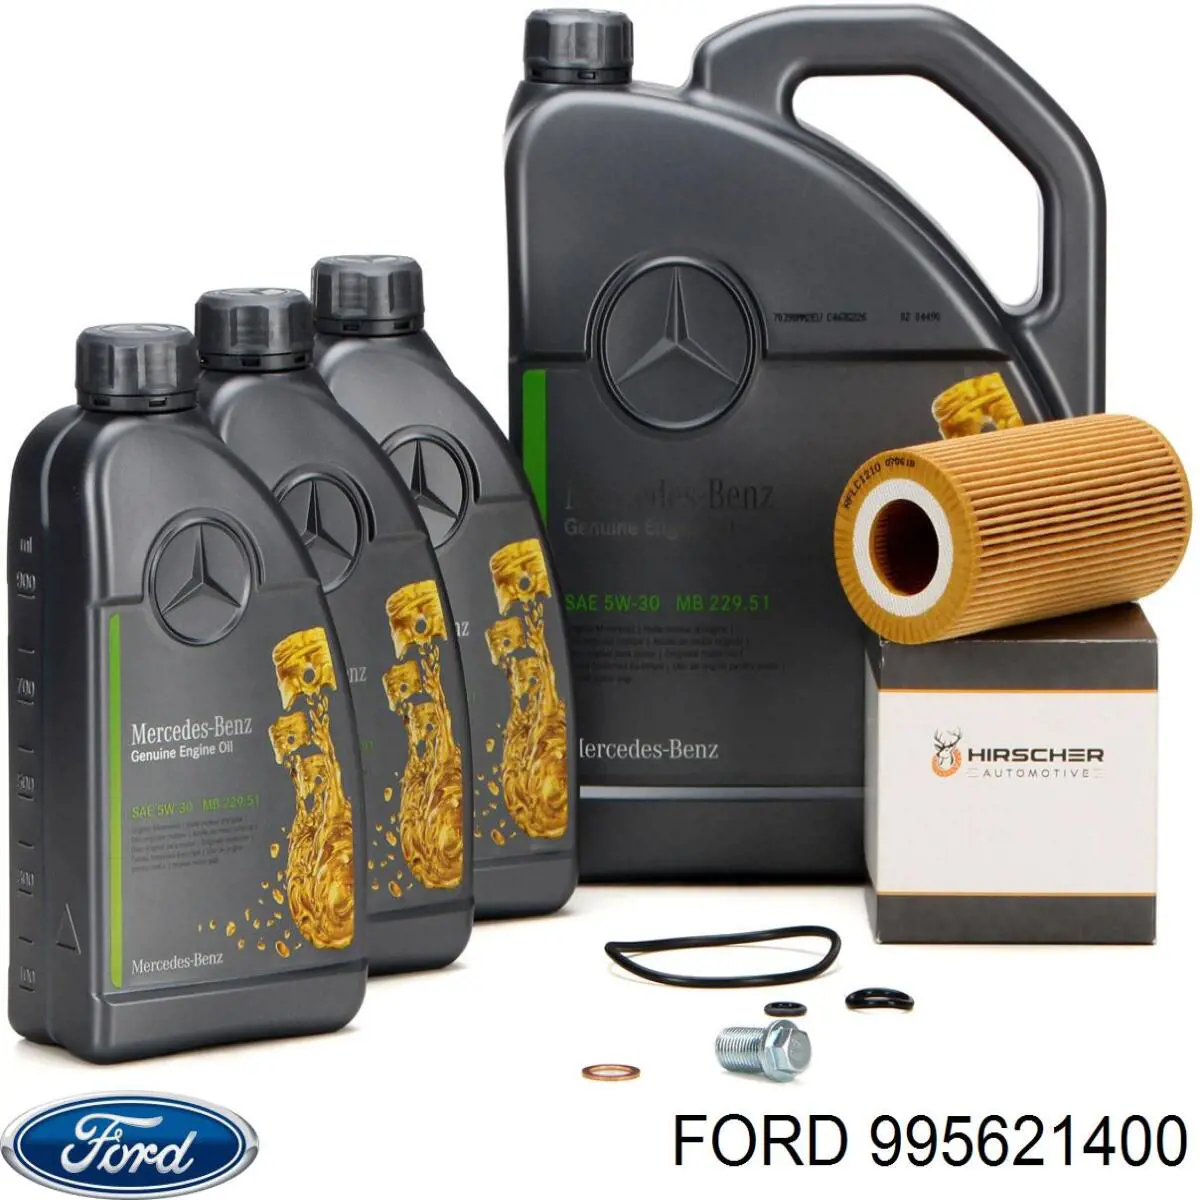 995621400 Ford junta, tapón roscado, colector de aceite